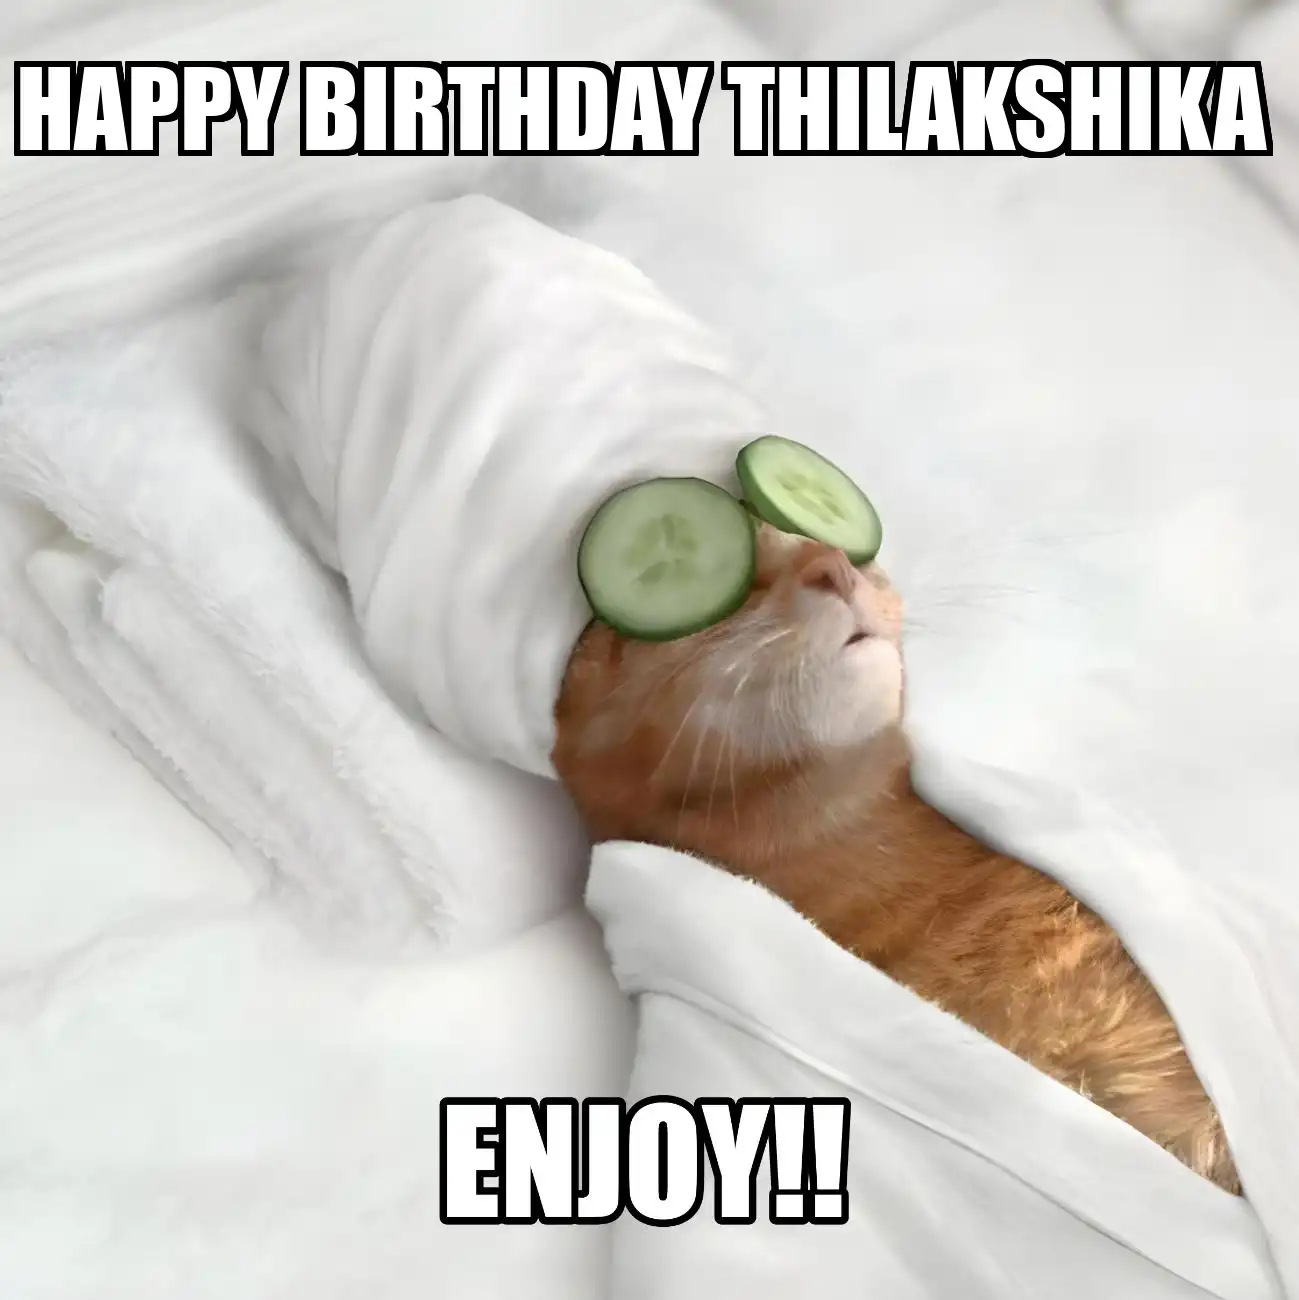 Happy Birthday Thilakshika Enjoy Cat Meme